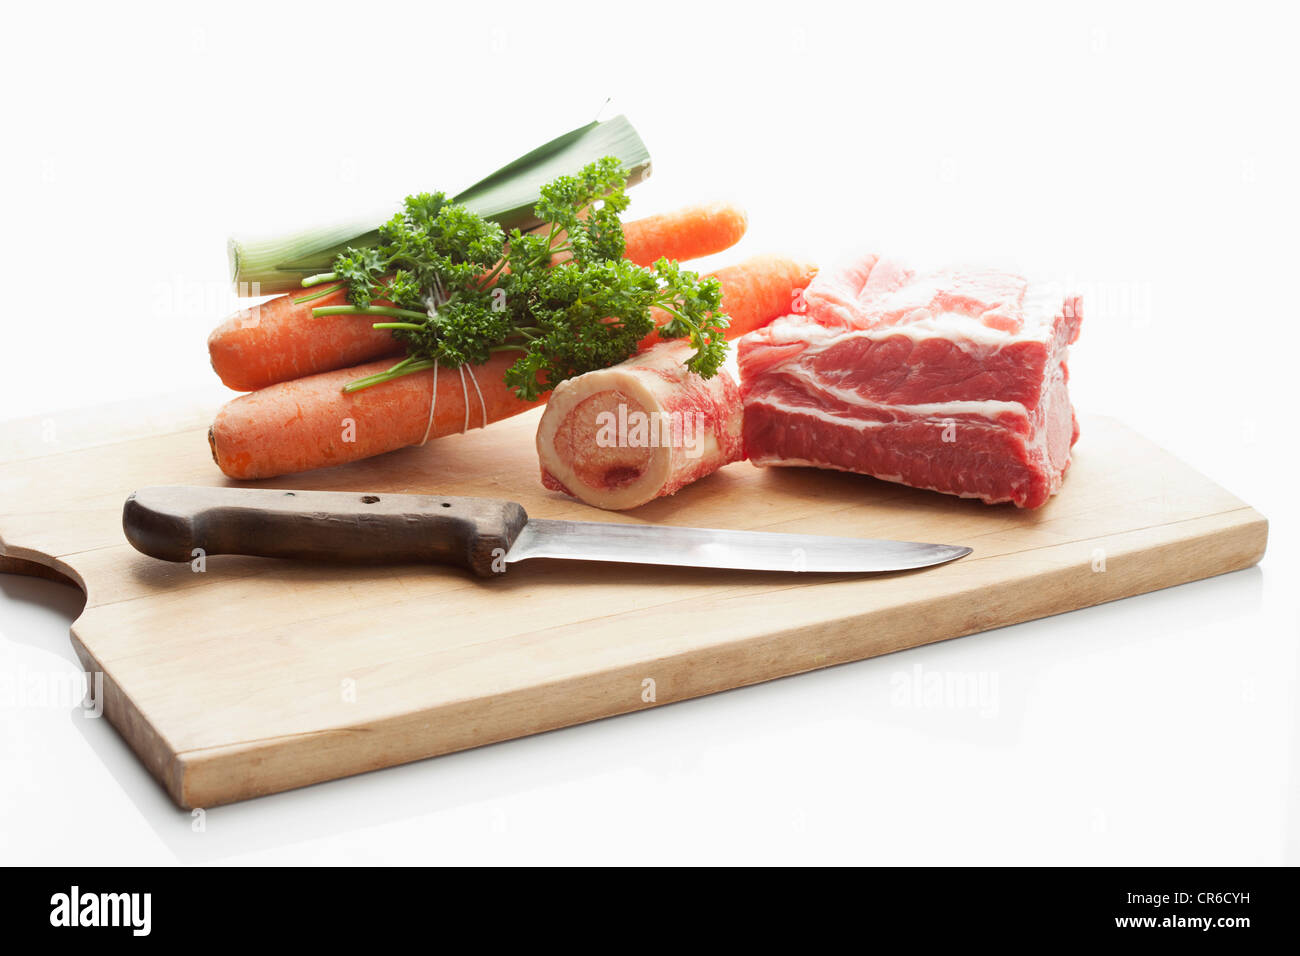 https://c8.alamy.com/comp/CR6CYH/beef-broth-ingredients-on-chopping-board-close-up-CR6CYH.jpg